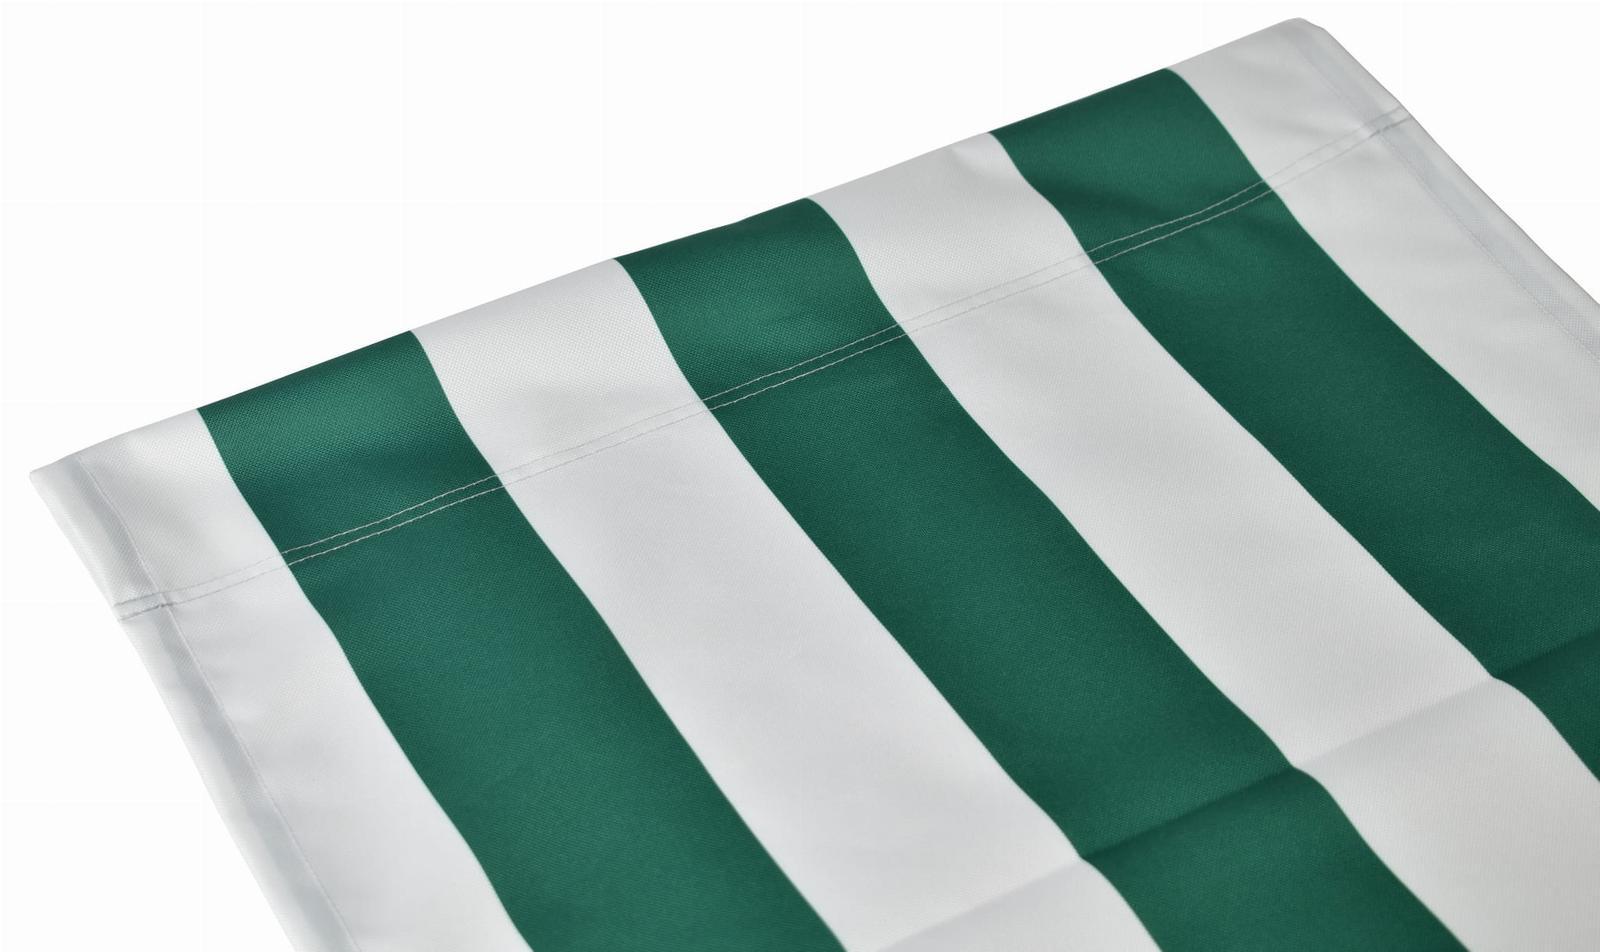 Tkanina leżakowa 45x120 cm materiał na leżak pasy biało-zielone 0 Full Screen